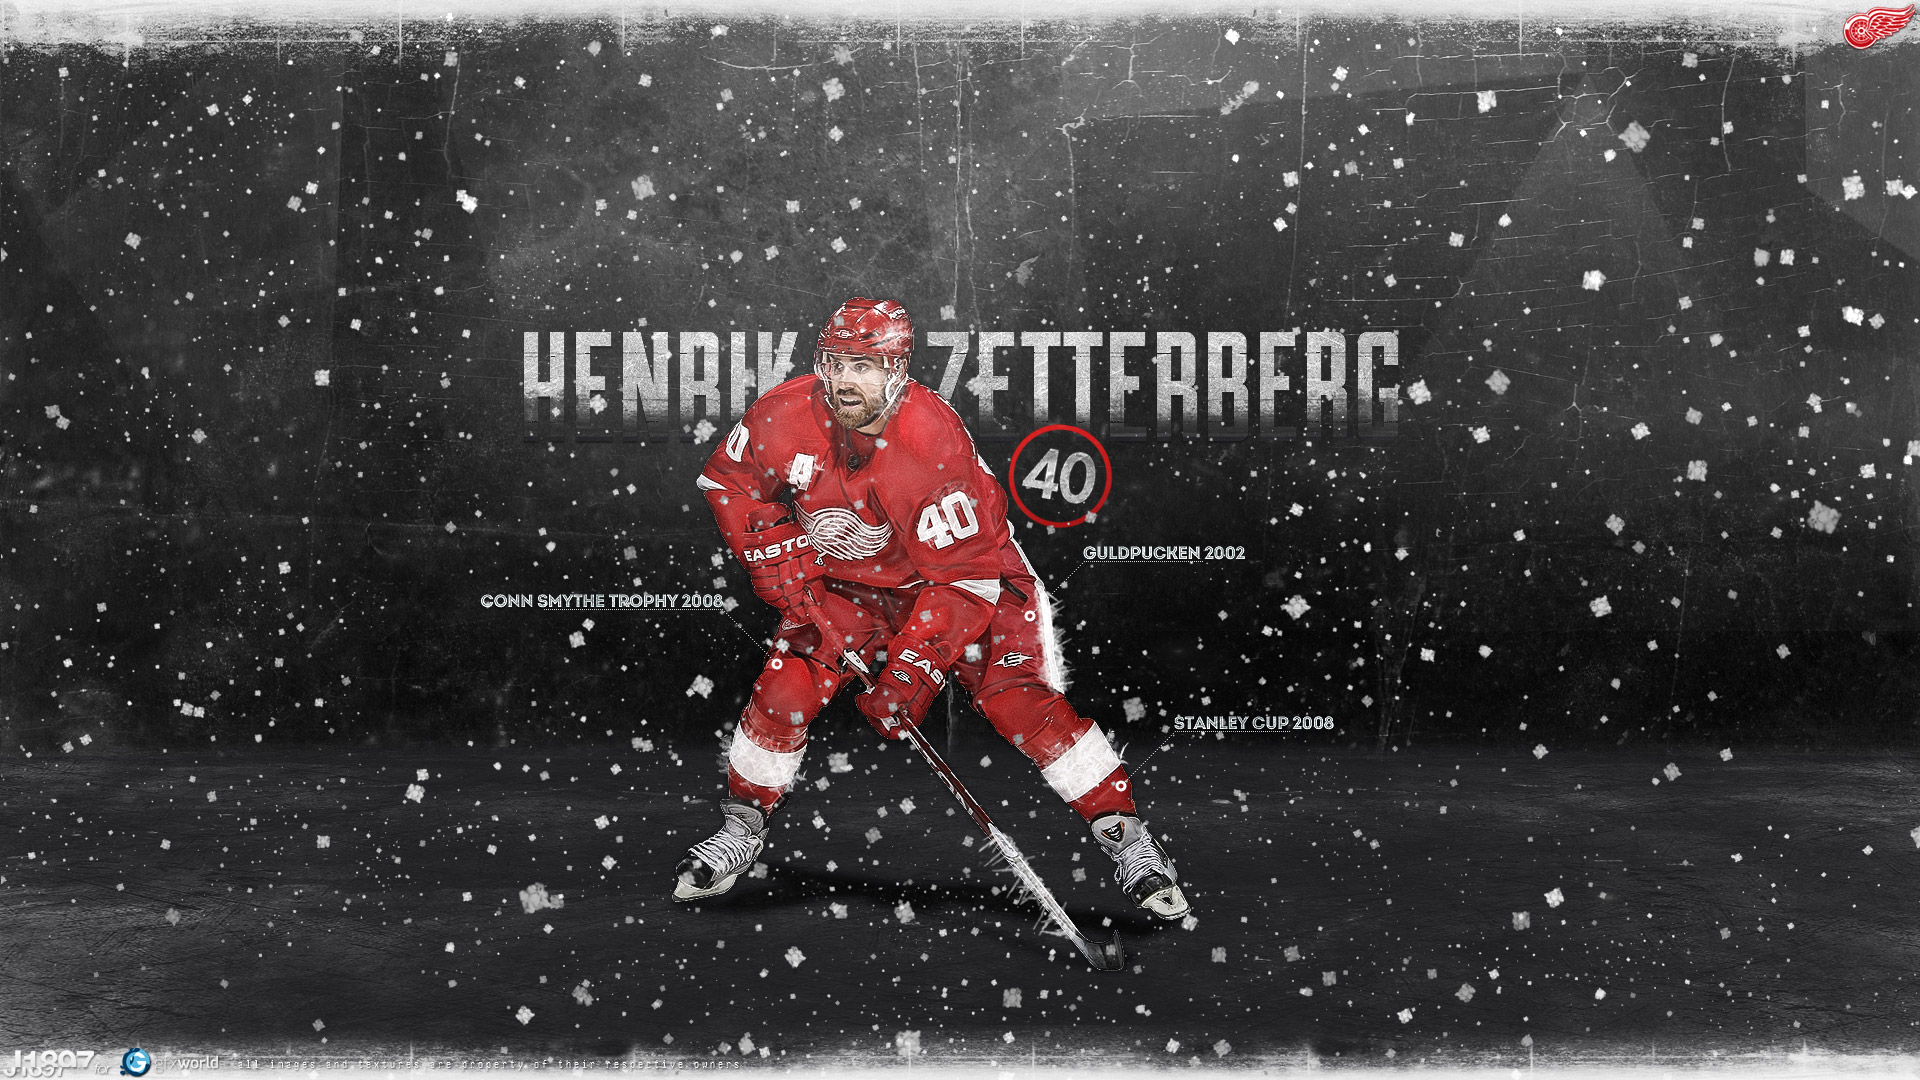 Nhl Wallpaper Henrik Zetterberg Red Wings